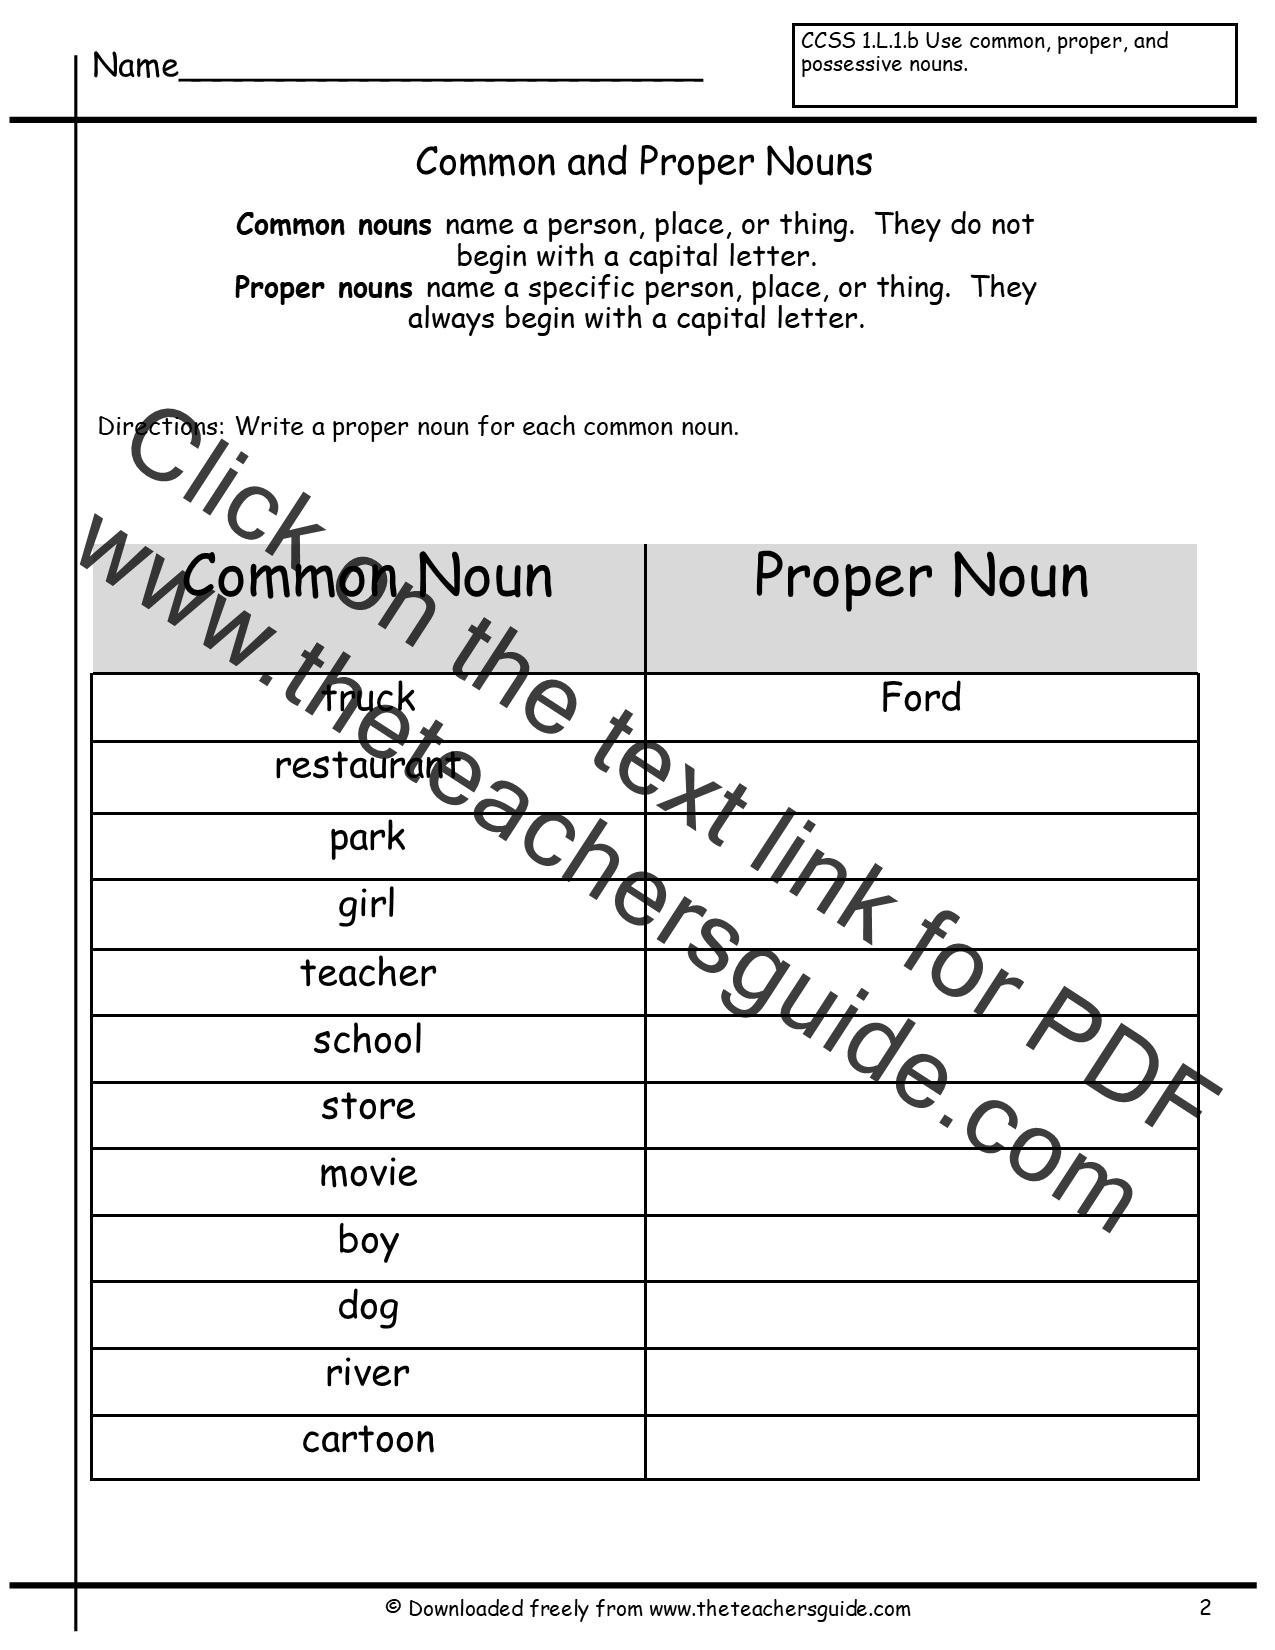 common-and-proper-nouns-worksheets-for-grade-4-slidesharetrick